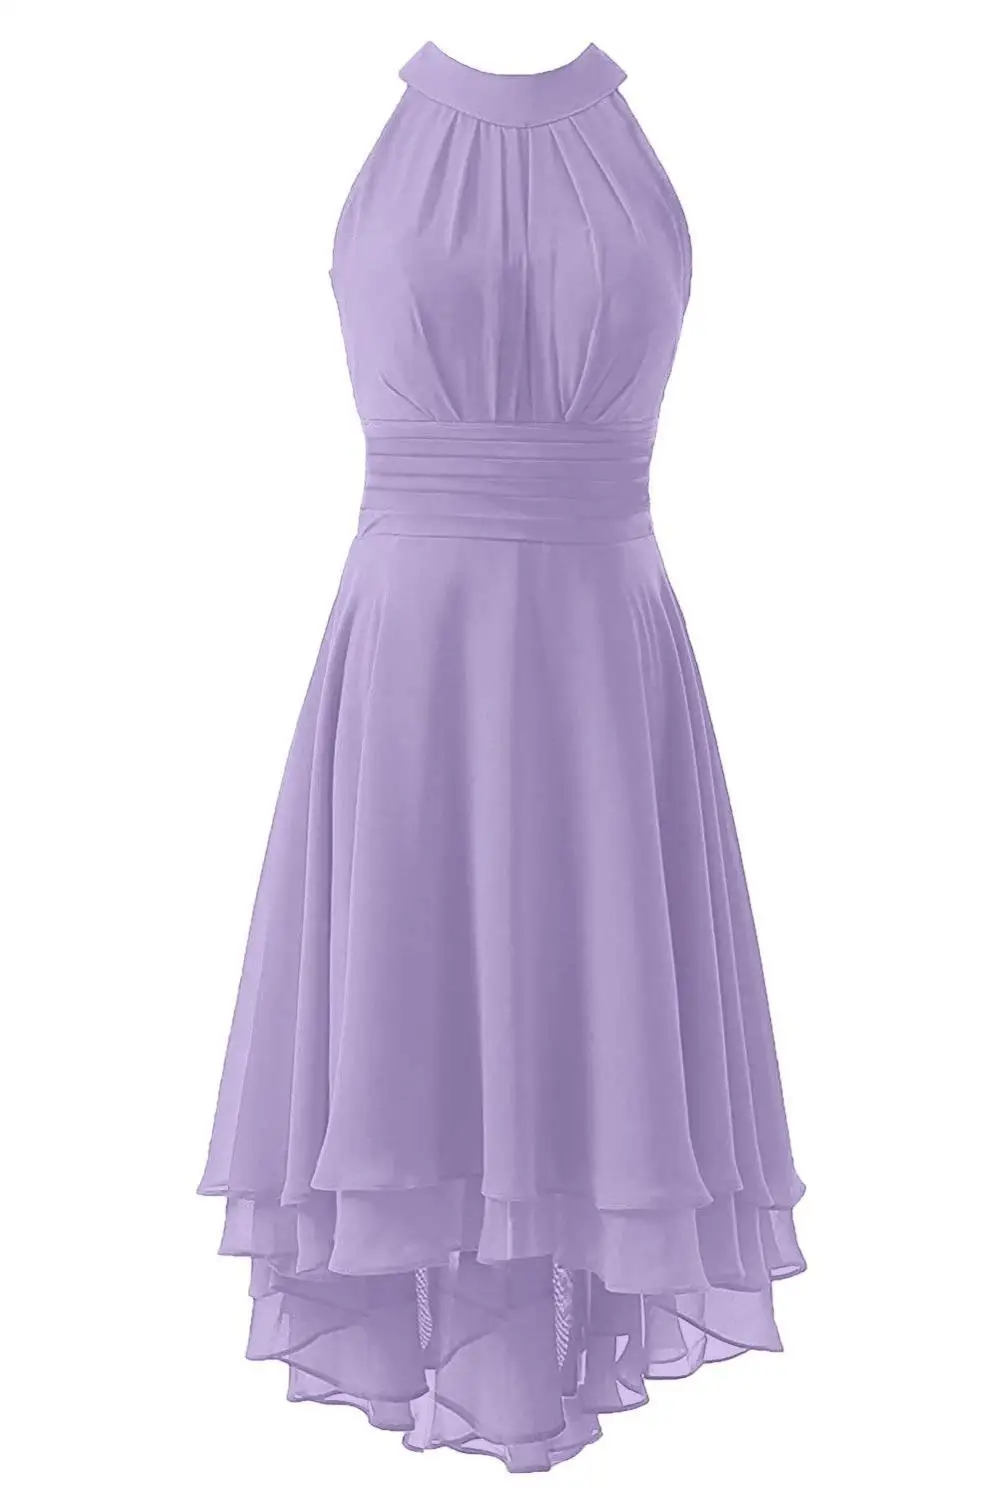 JaneVini популярное шифоновое Сиреневое платье для свадебной вечеринки, выпускного вечера, Высокие Низкие зеленые платья подружки невесты, женские платья подружки невесты длиной до середины икры - Цвет: Lavender